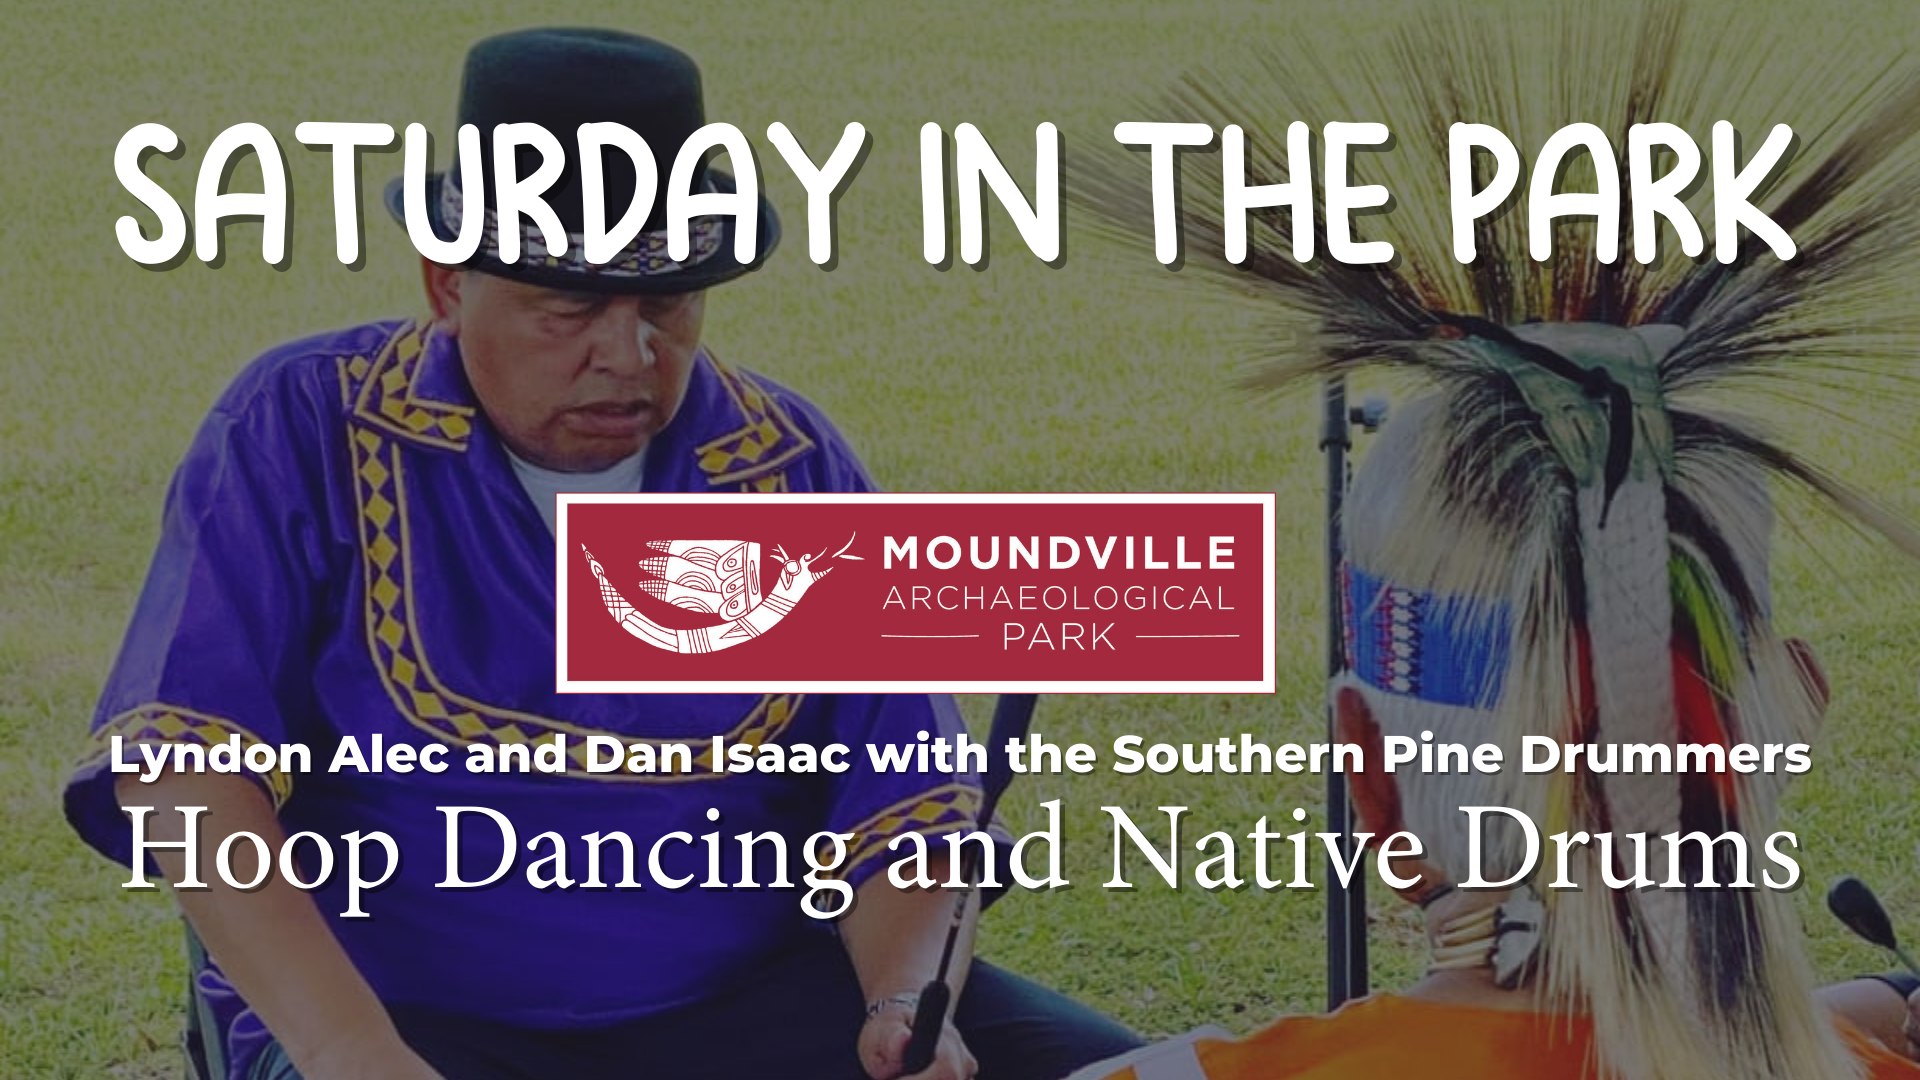 Saturday in the Park: Hoop Dancing & Native Drums